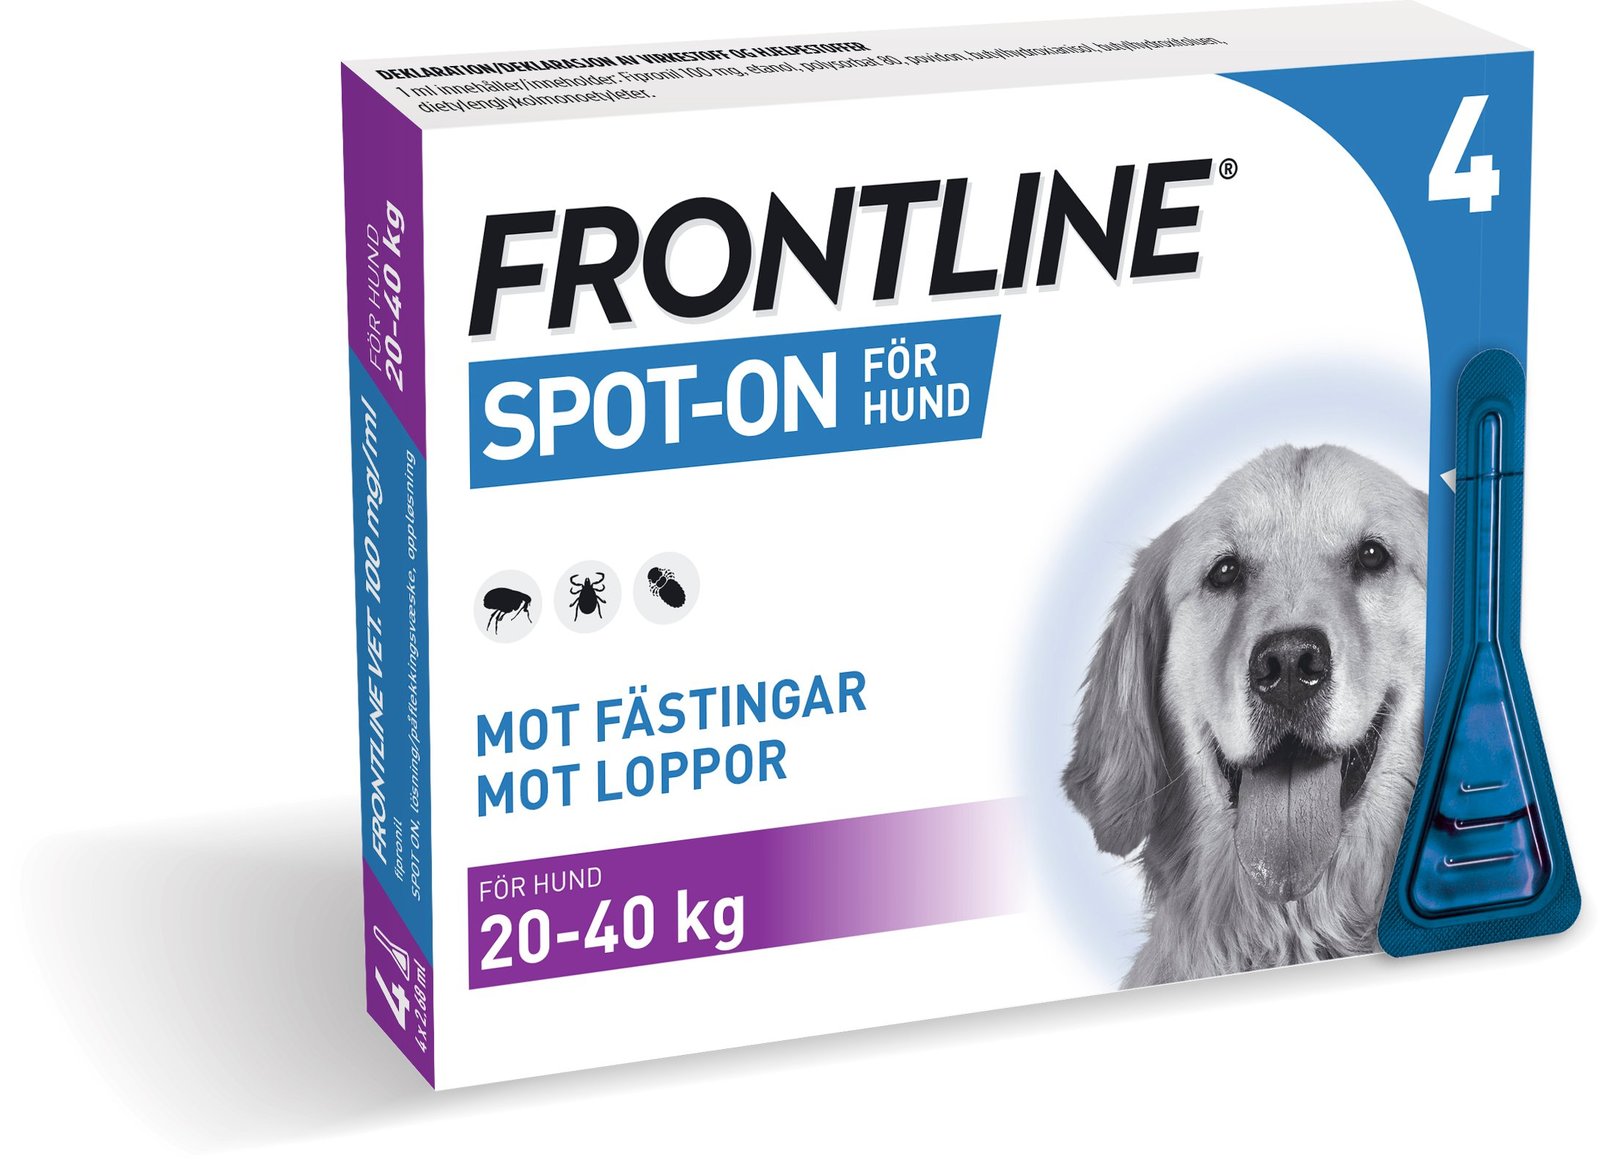 Frontline Vet 100 mg/ml spot-on 4 x 2,68 ml